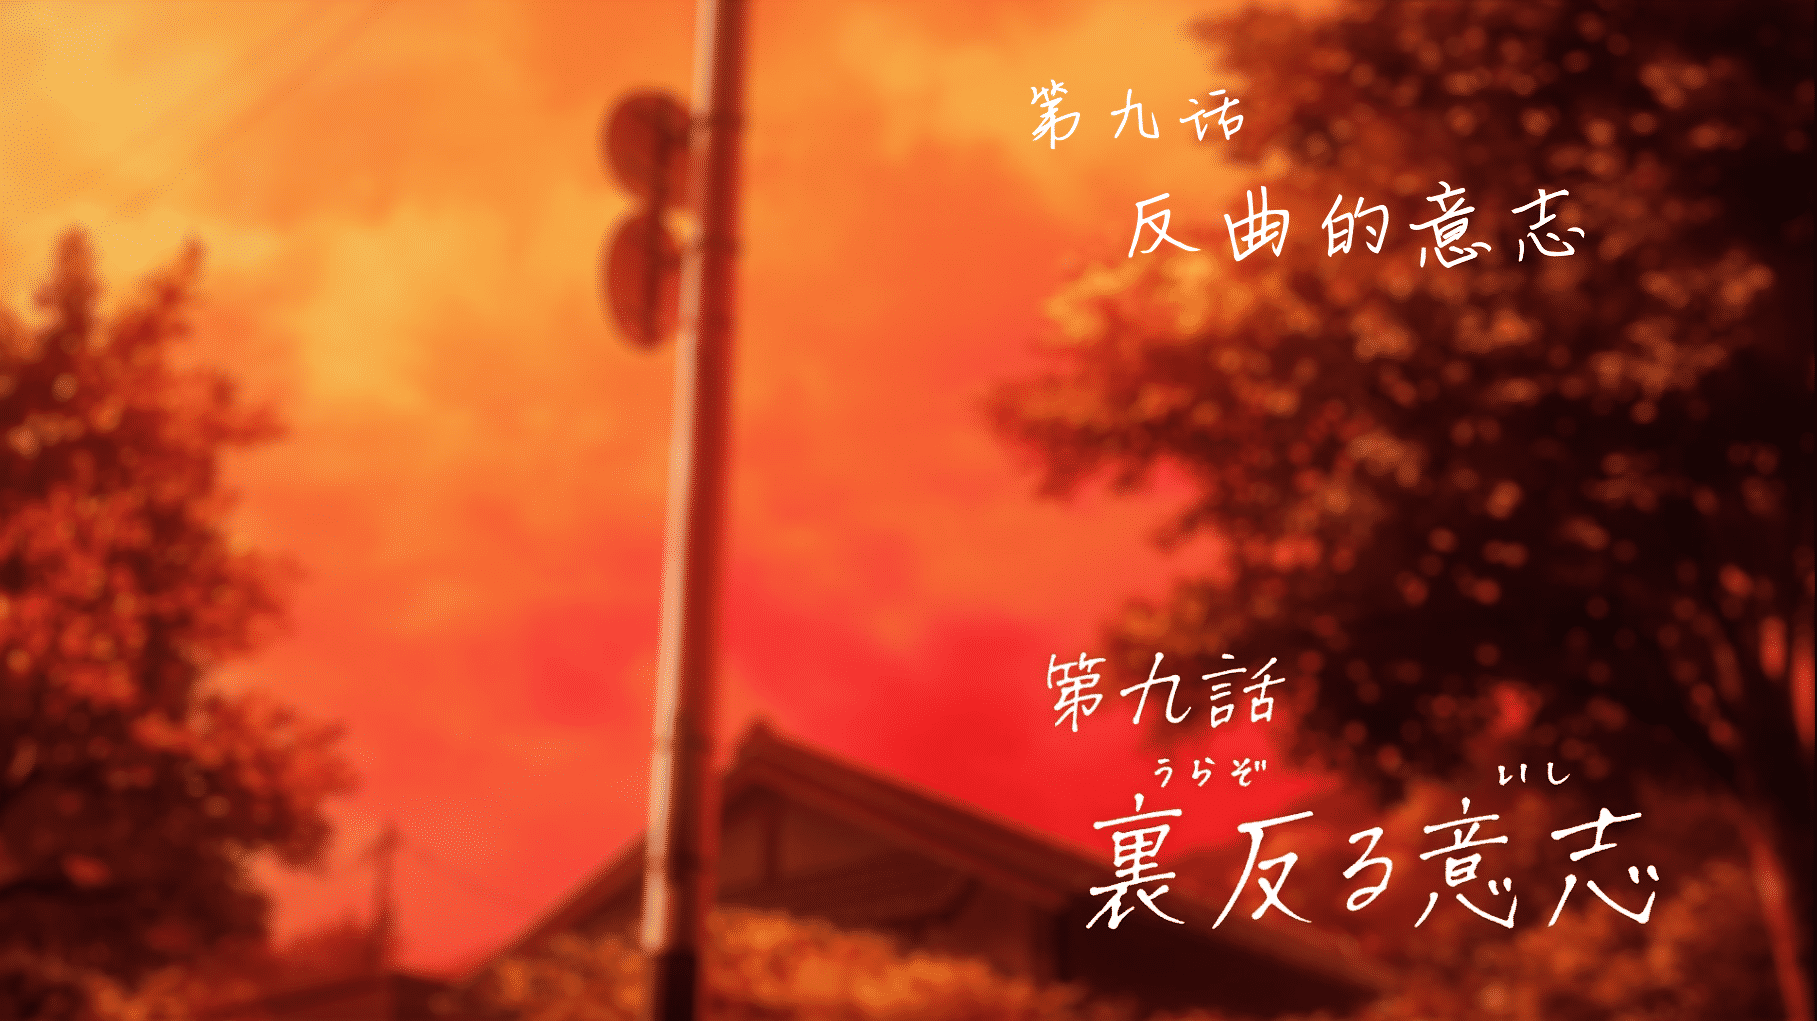 [猎户不鸽压制] 弦音 -联系的一箭- Tsurune：Tsunagari no Issha [09] [1080p] [简中内嵌] [2023年1月番]插图icecomic动漫-云之彼端,约定的地方(´･ᴗ･`)1